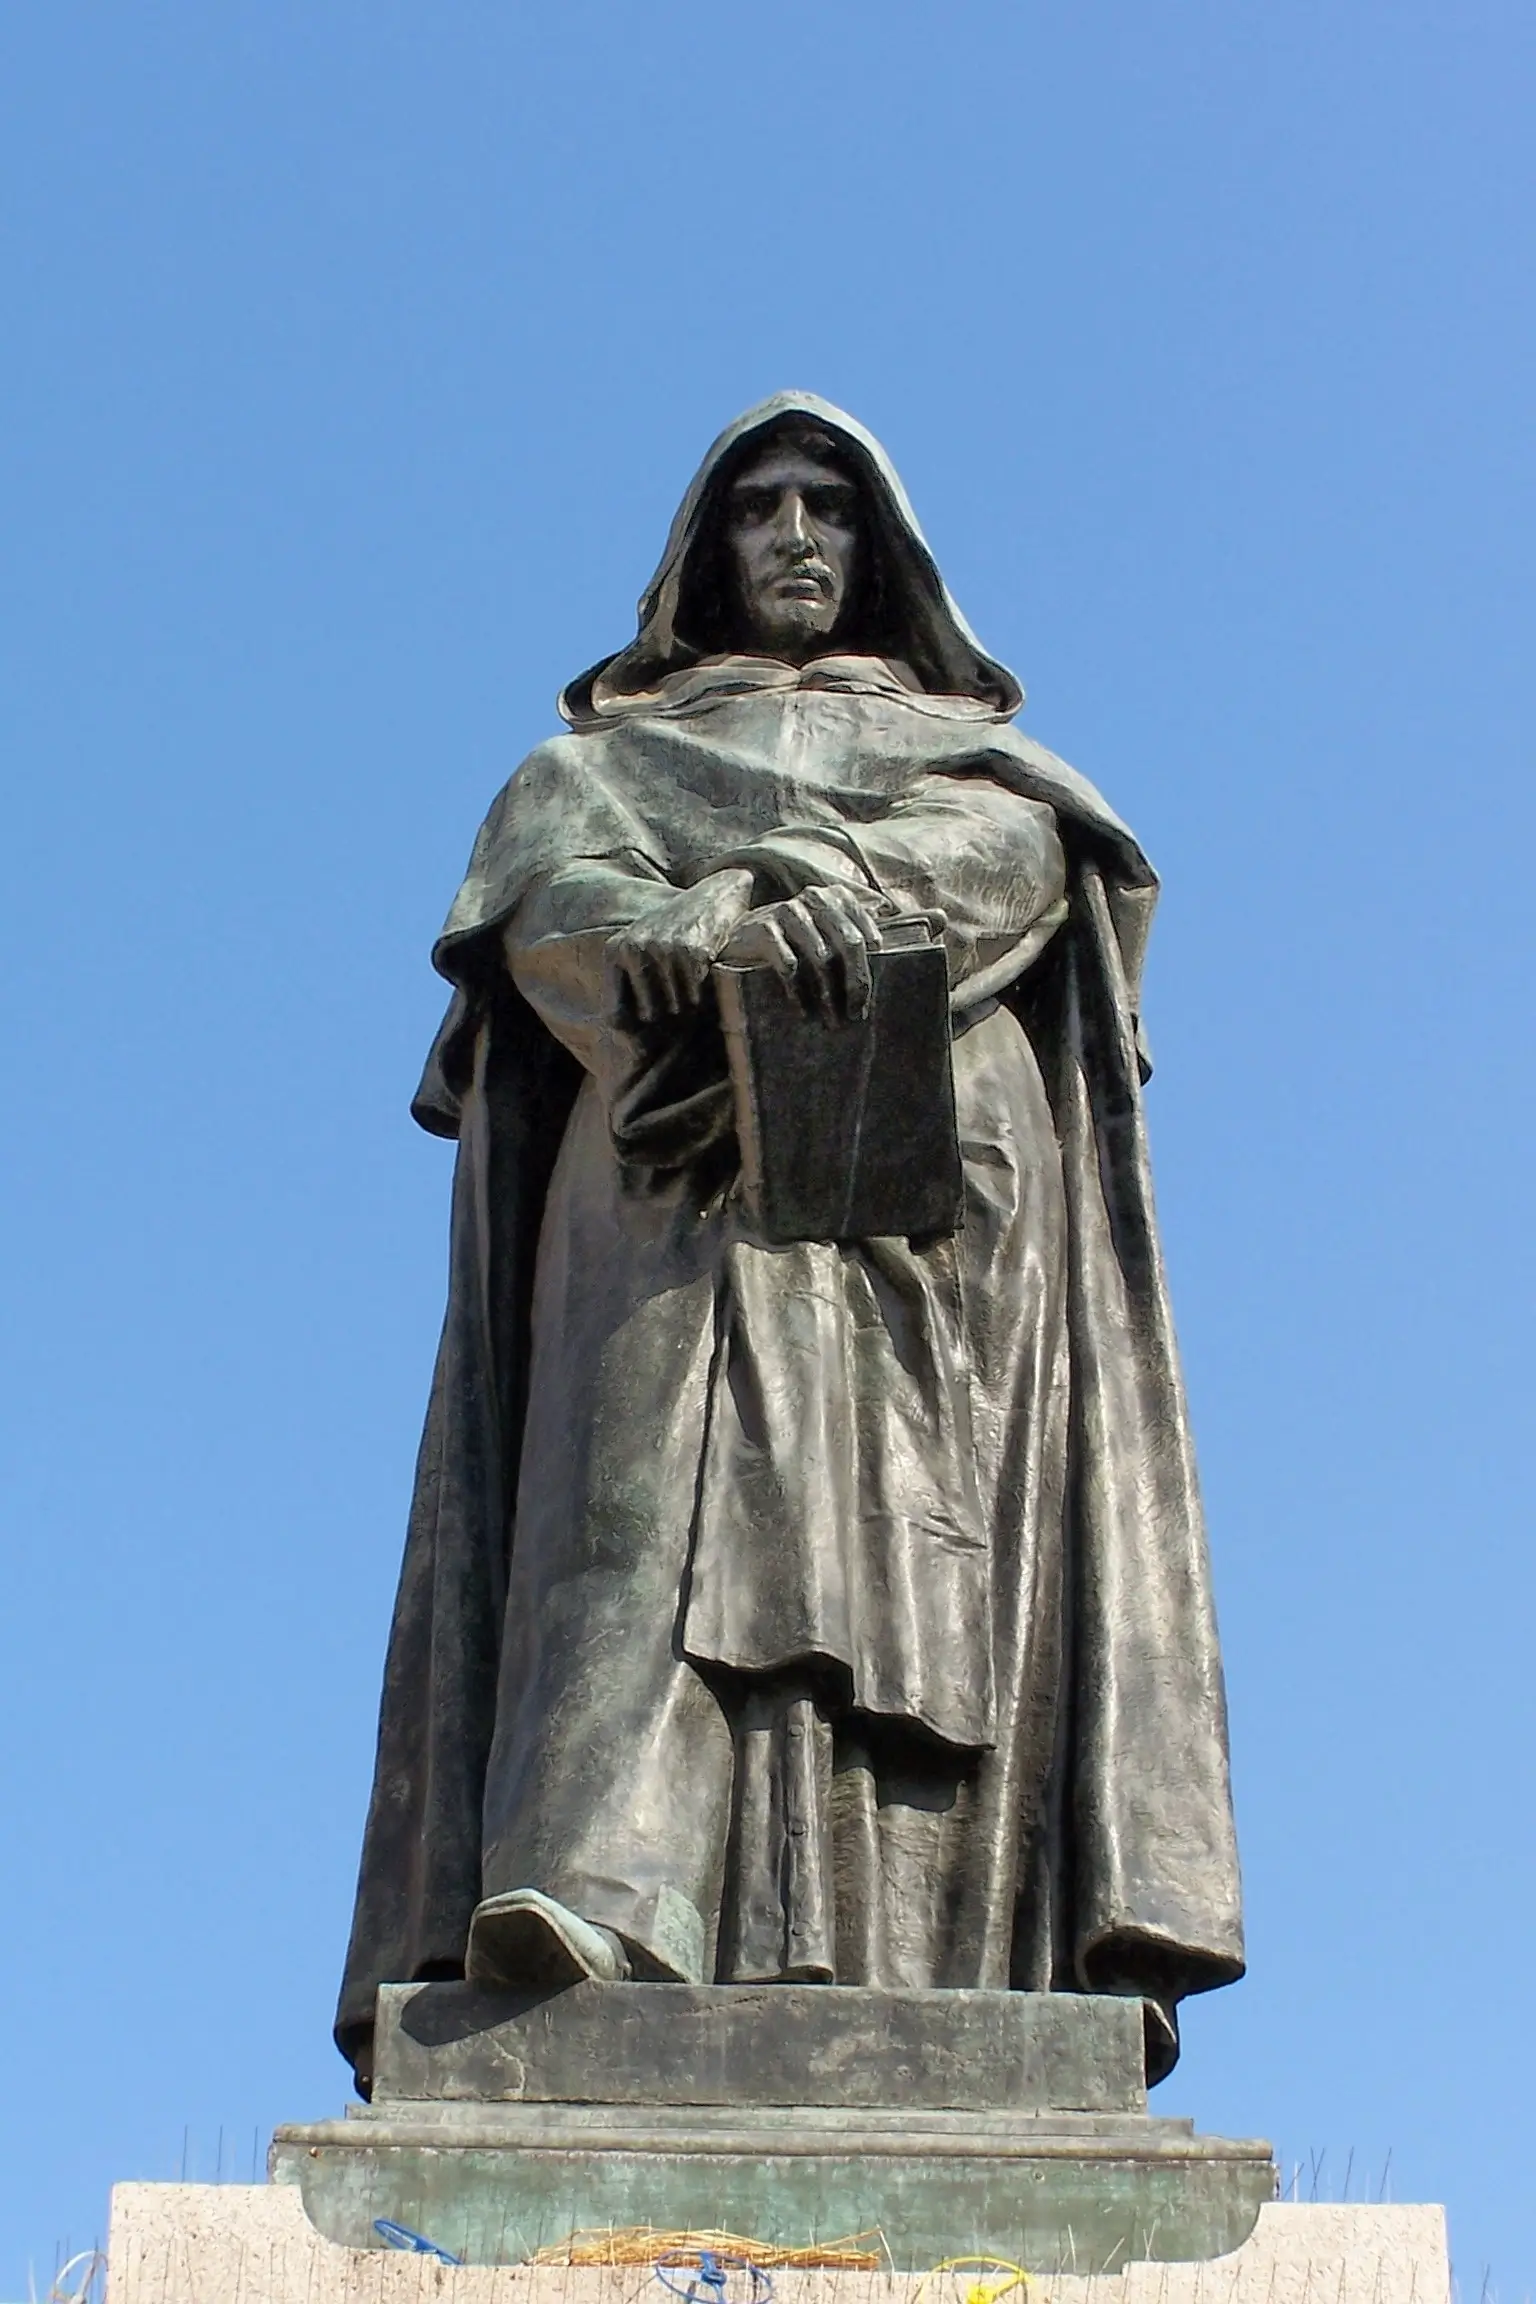 Statue of Giordano Bruno in Rome.